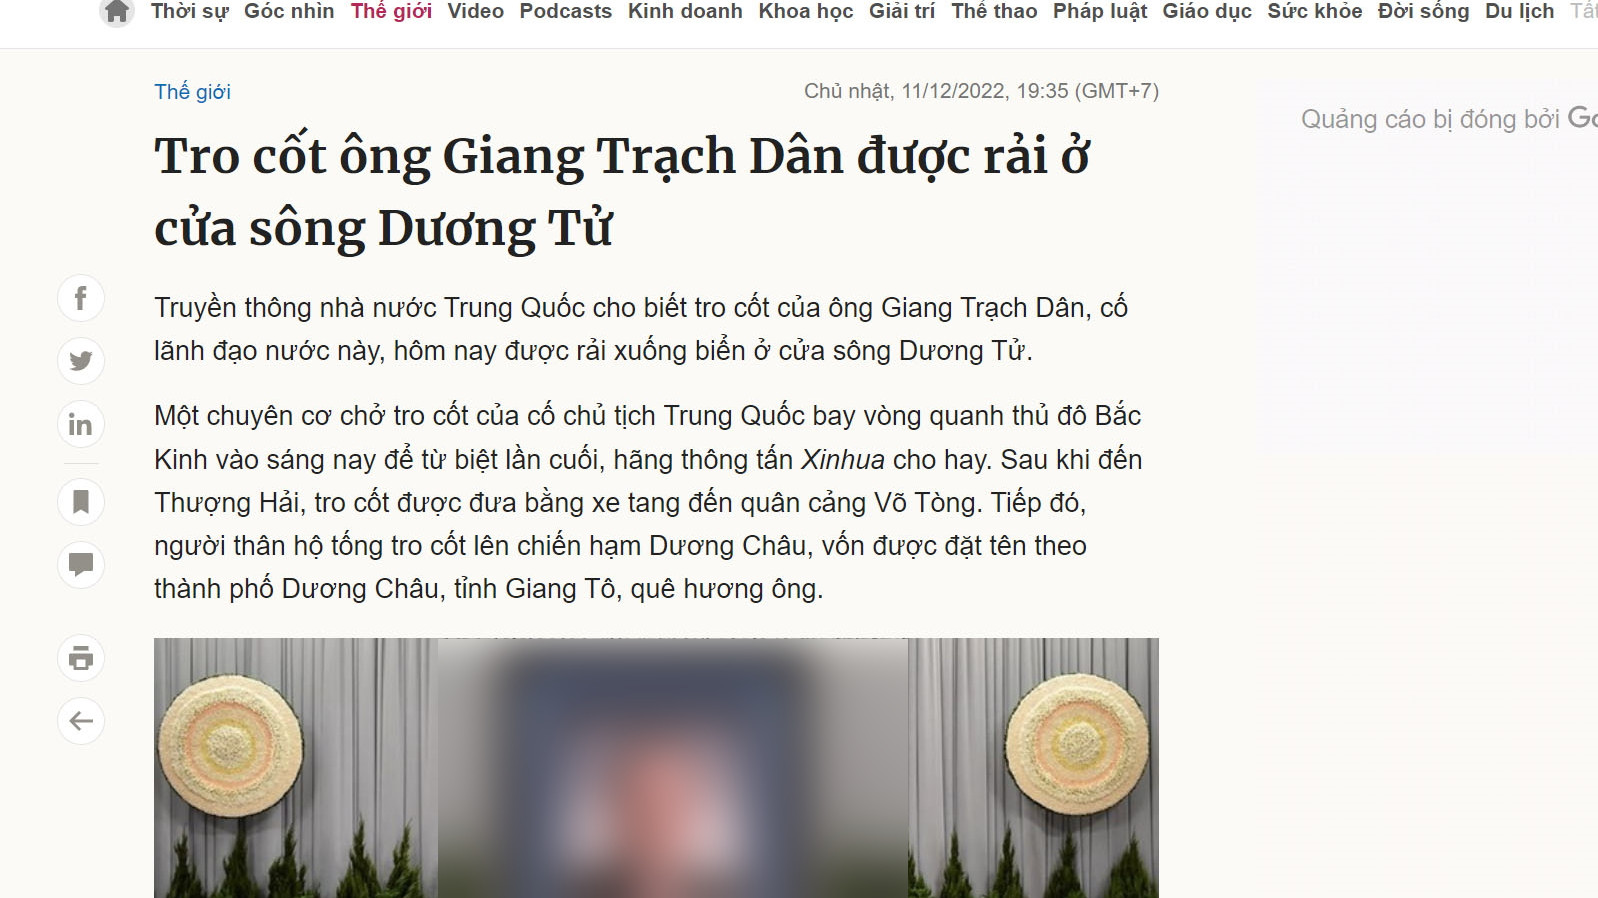 Dù đã nhắm mắt xuôi tay, Giang Trạch Dân vẫn “dạy cho Cộng sản Việt Nam một  bài học” - Thời báo